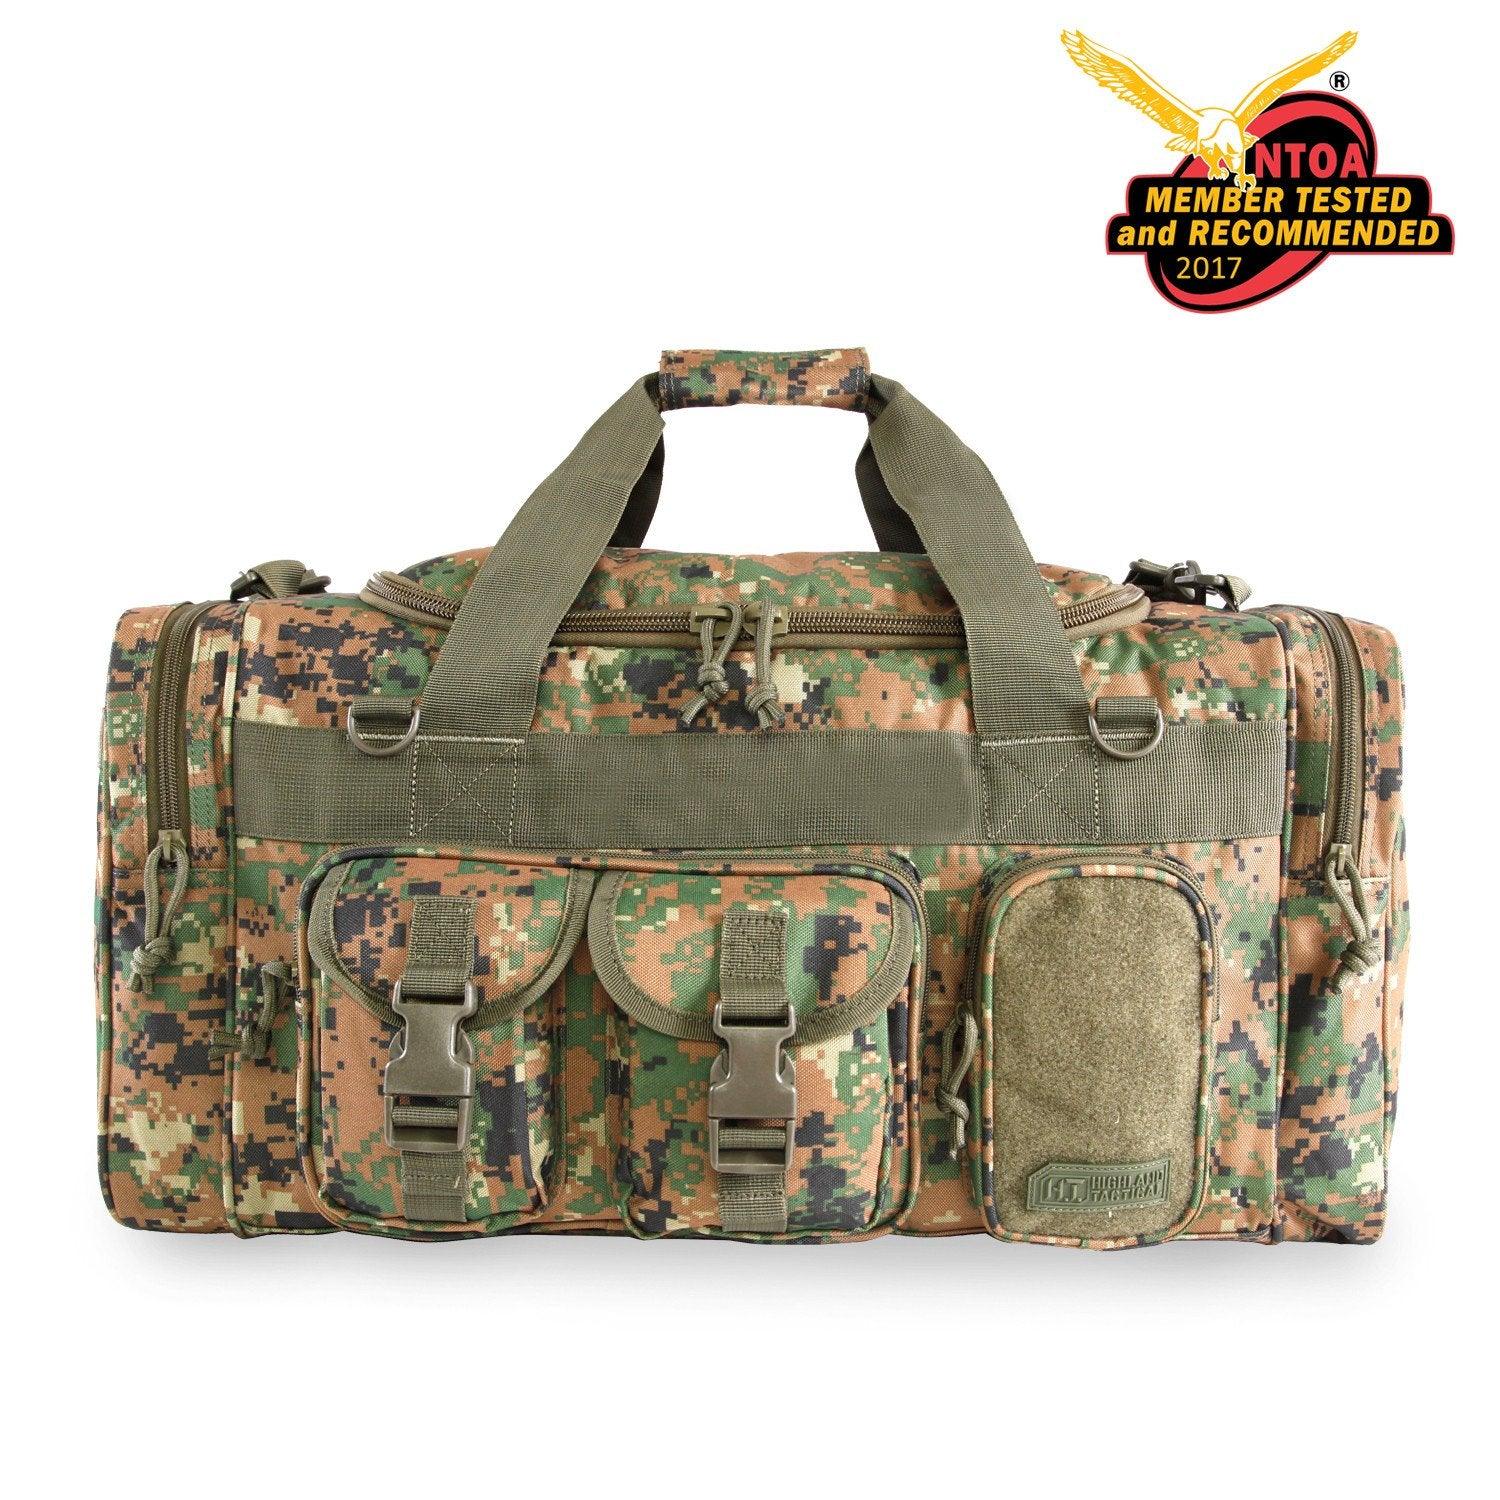 Ranger Duffel Bag, Duffle Bags, Range Bags